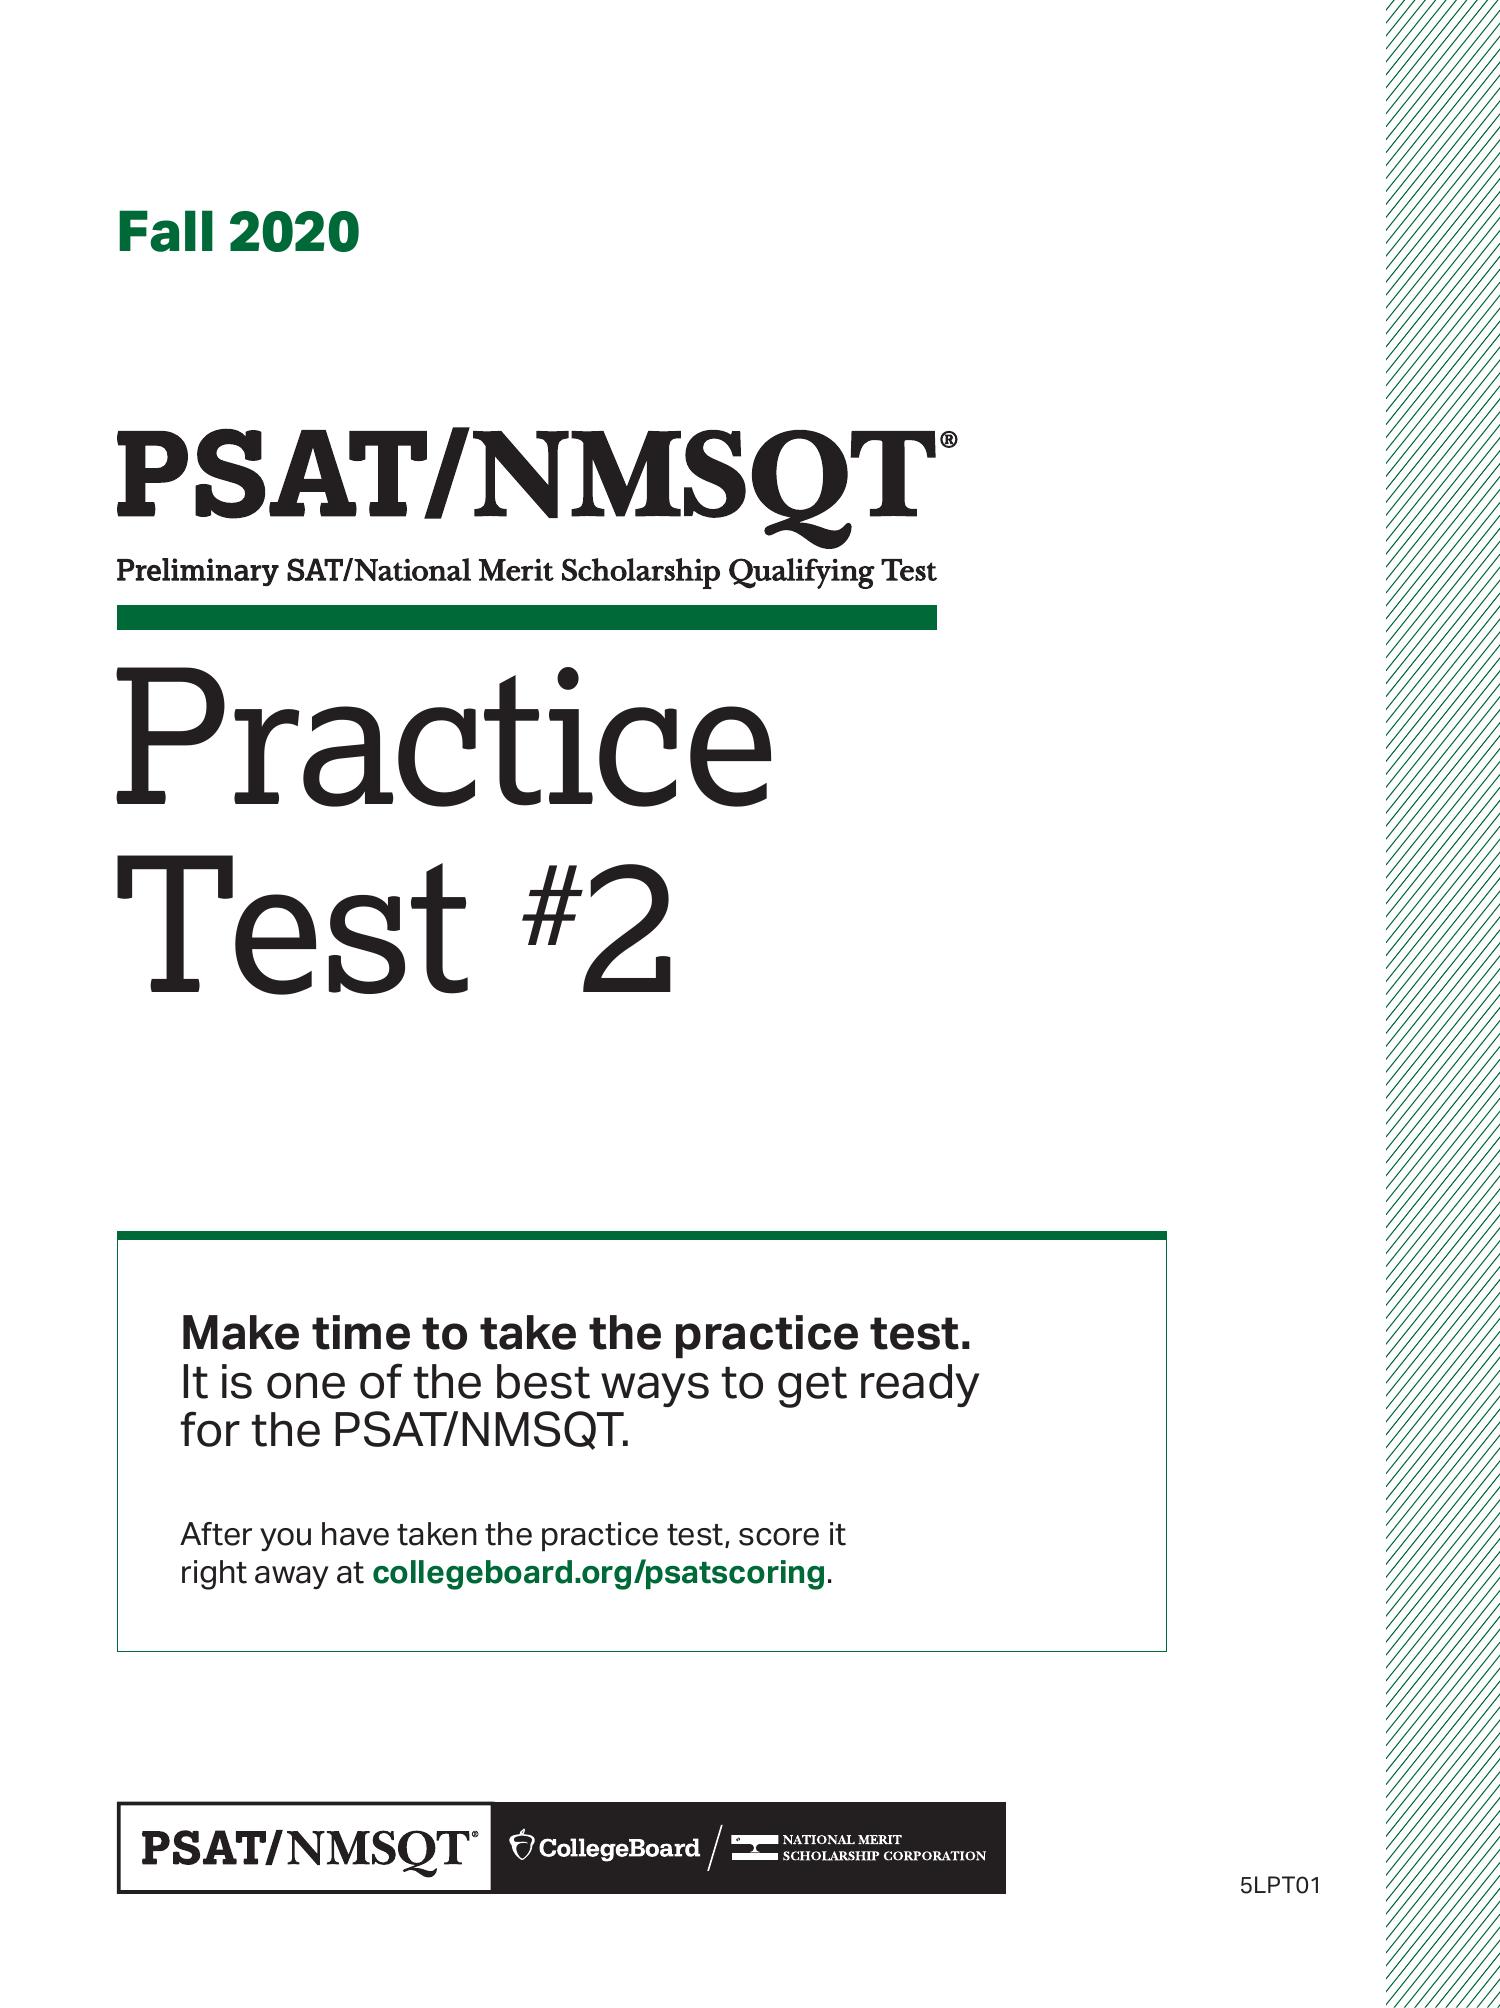 psat-nmsqt-practice-test-2-pdf-docdroid